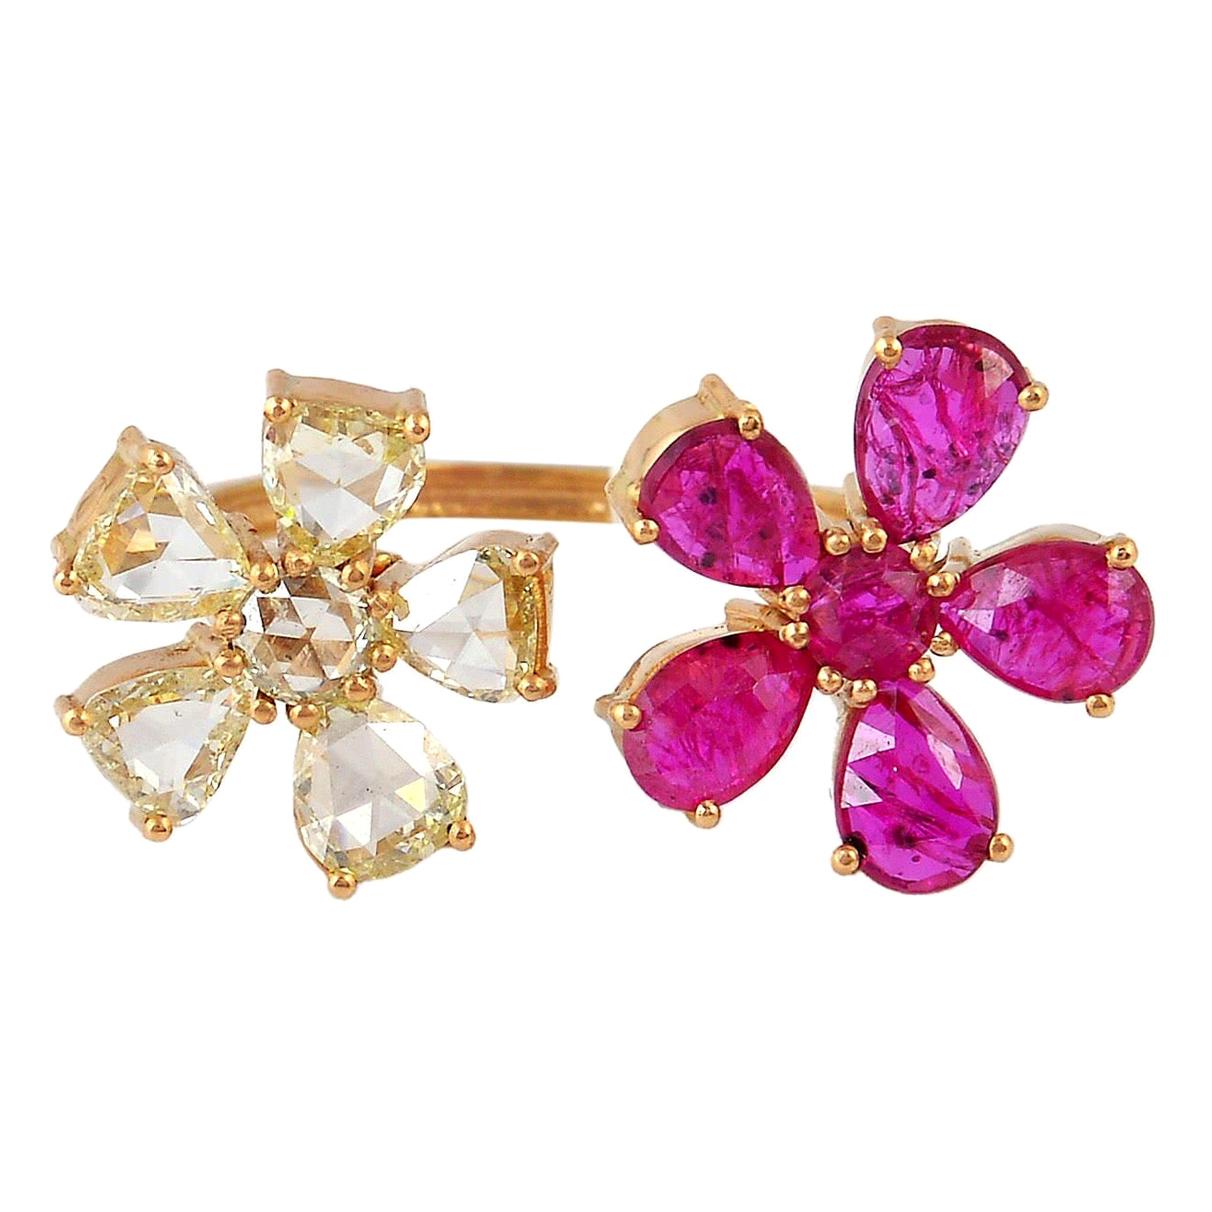 Blumenring mit Rubin, Rubin und Diamant aus 18 Karat Gold